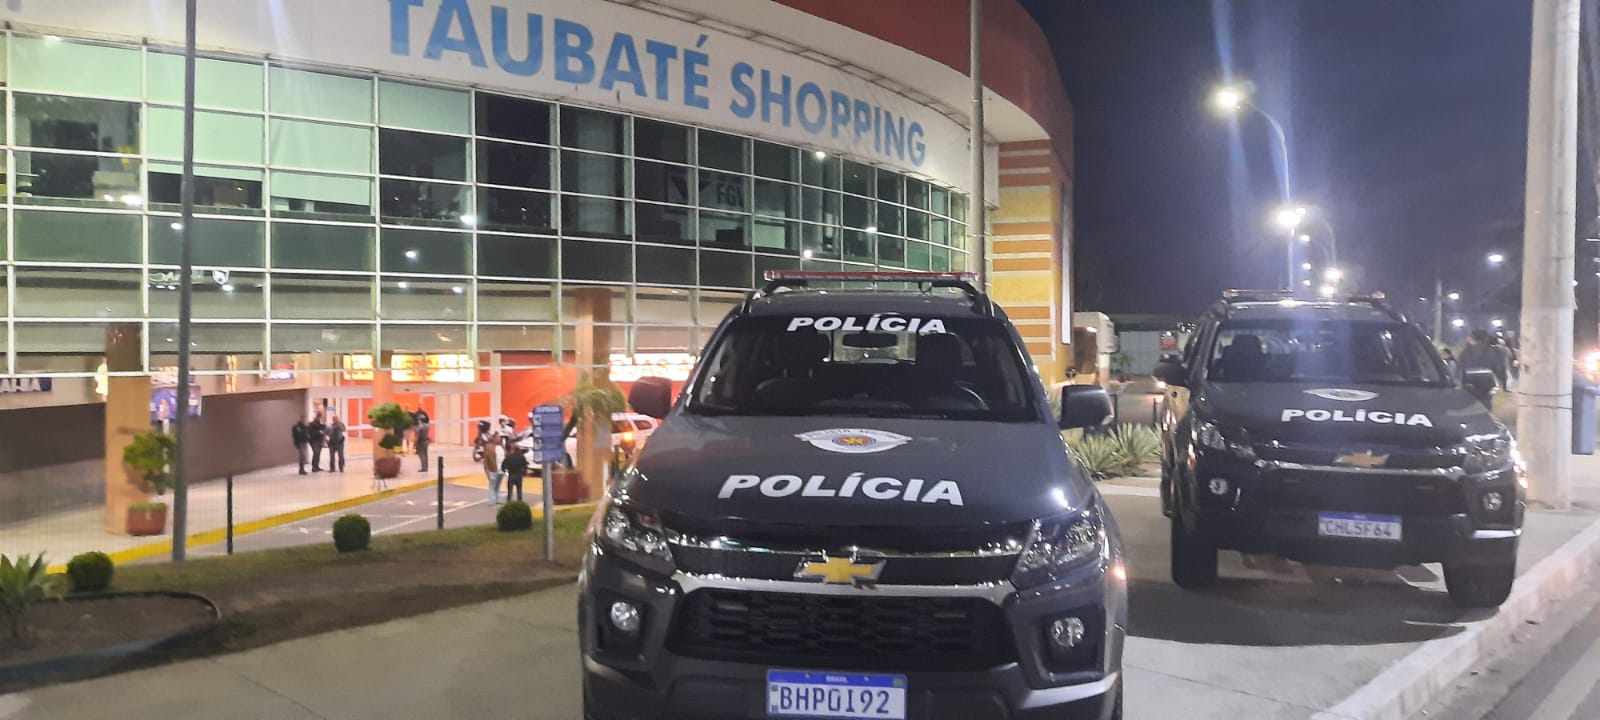 Bandidos invadem joalheria em shopping e funcionário é feito refém em Taubaté